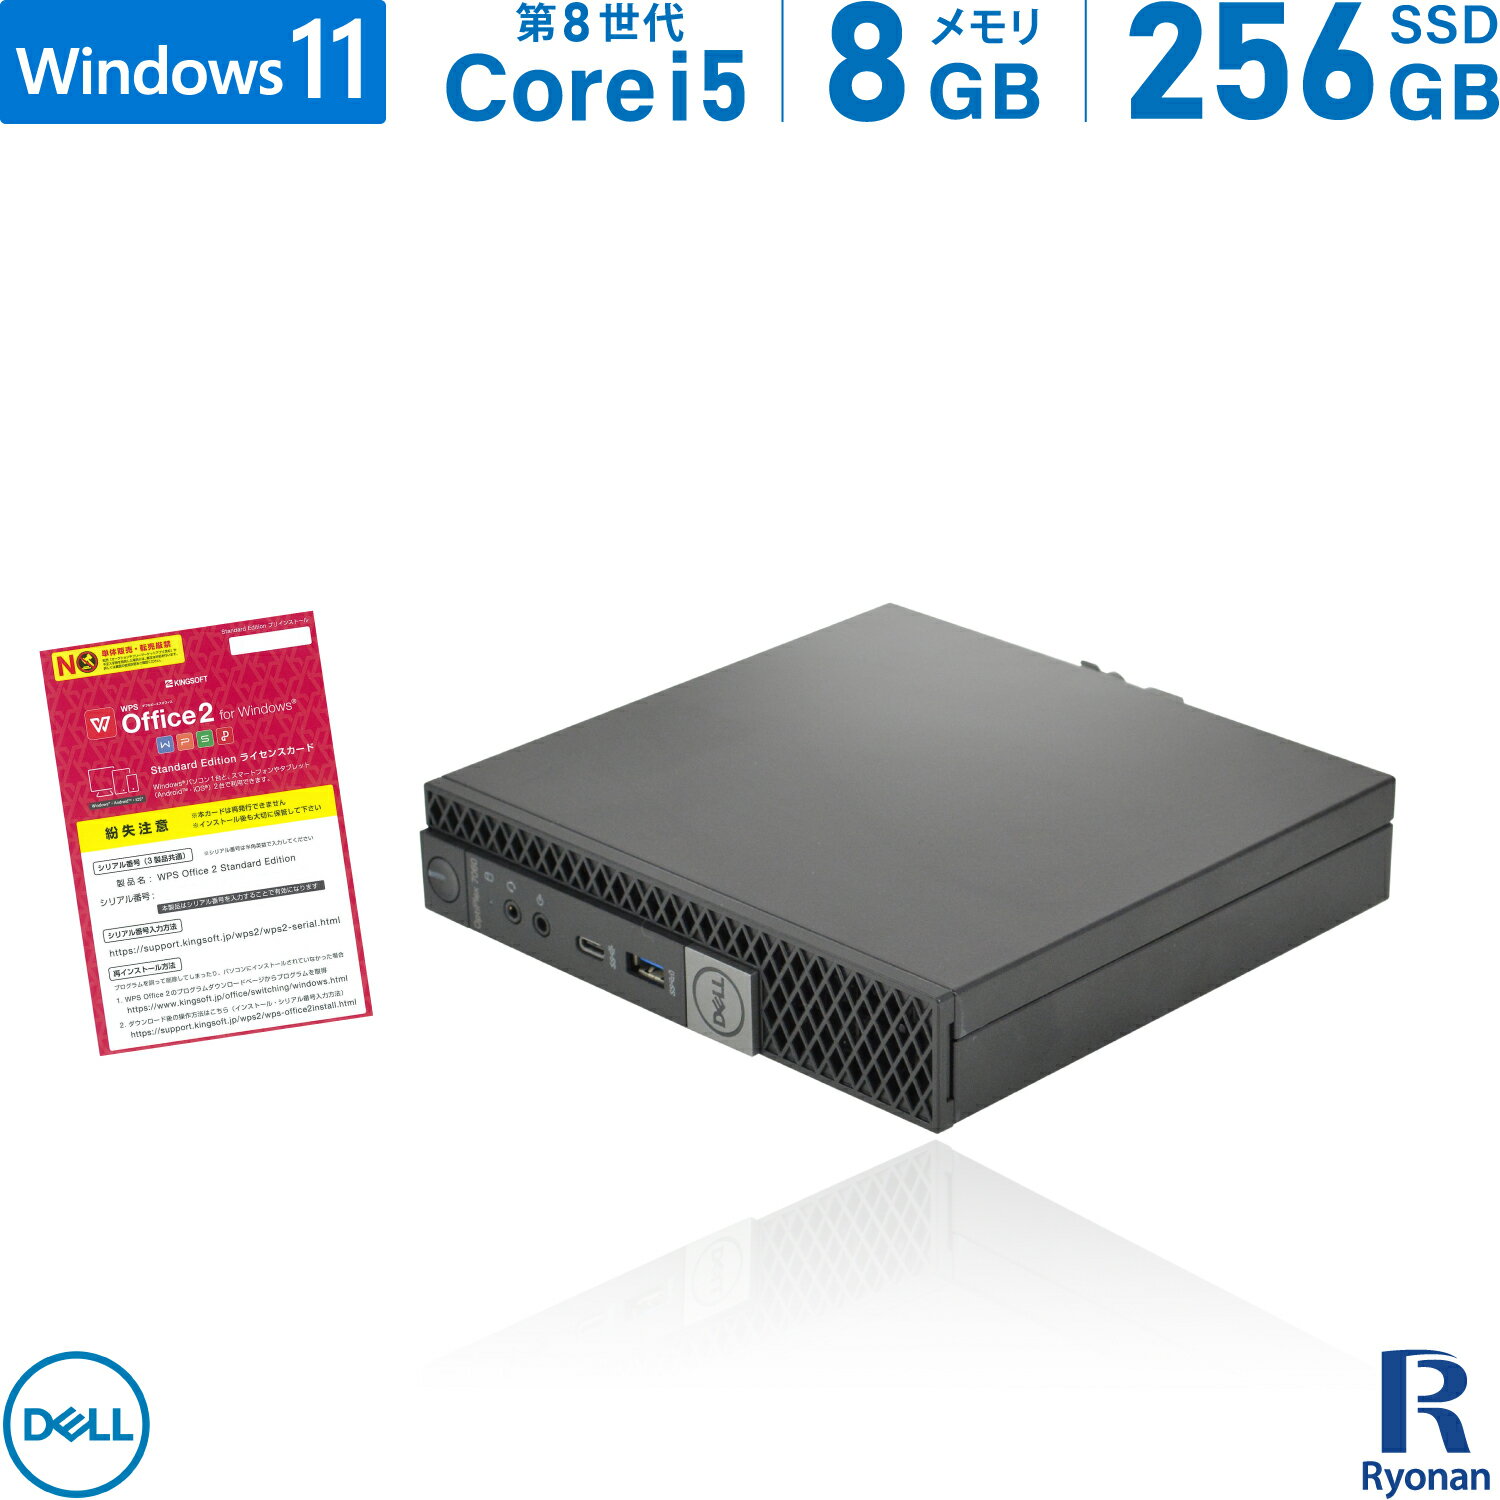 【スーパーSALE 10%OFF】DELL OptiPlex 7060 micro 第8世代 Core i5 メモリ:8GB 新品SSD:240GB デスクトップパソコン USB 3.0 Type-C Office付 パソコン デスクトップ 中古パソコン Windows 11…